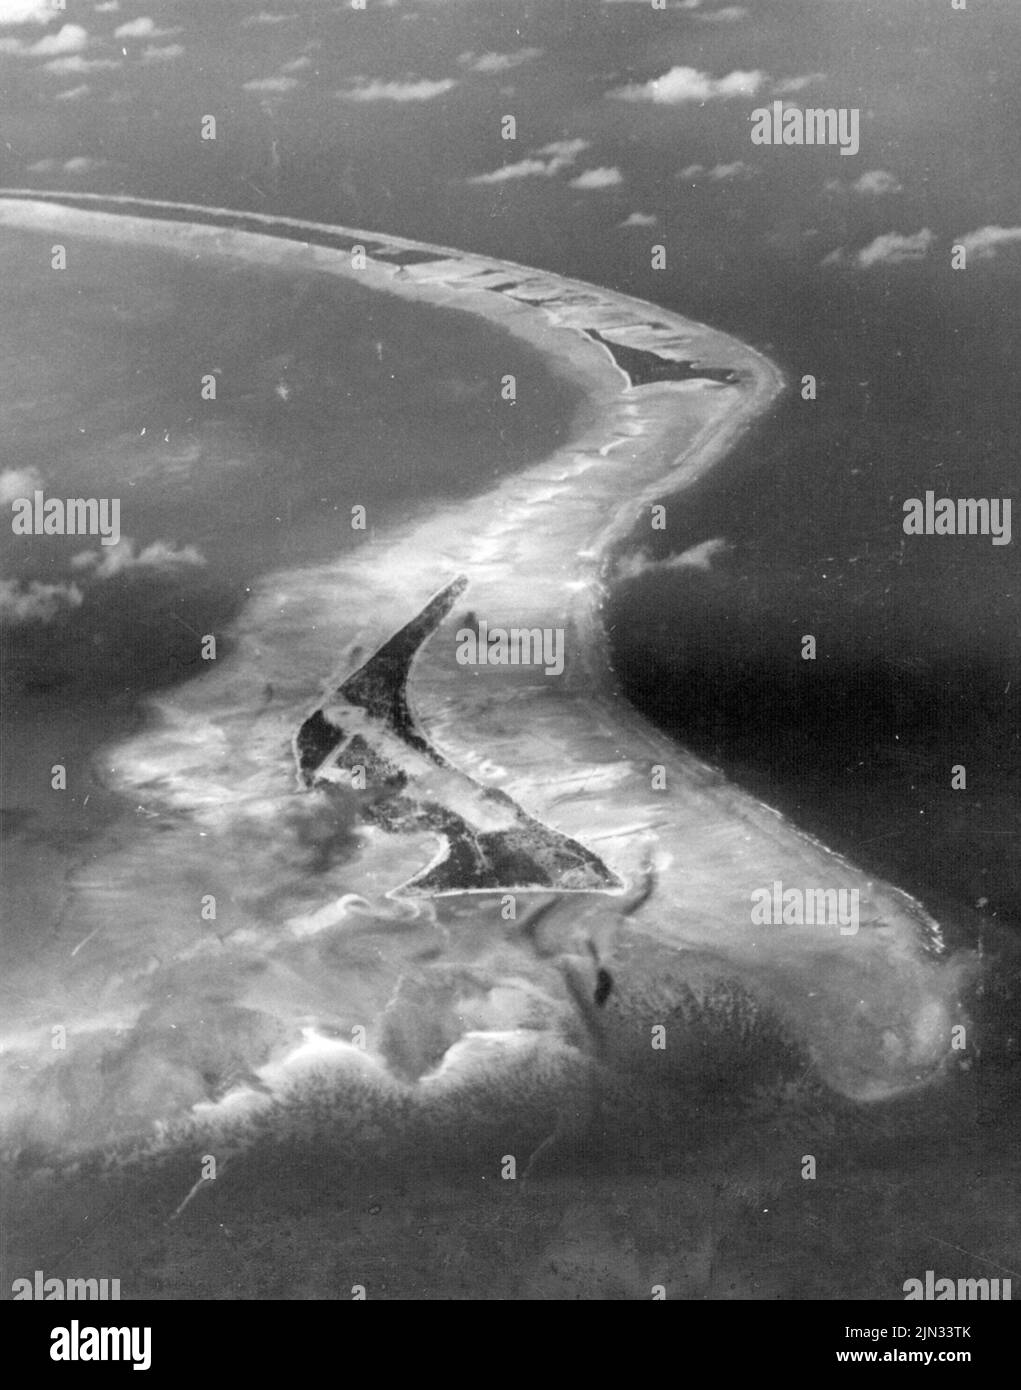 Vista aérea de la isla de Betio, Atolón de Tarawa antes de la invasión de la isla por los Marines de EE.UU. En noviembre de 1943. Los desembarques en Tarawa fueron parte de la ofensiva estadounidense contra las islas del Pacífico en poder de Japón antes de prepararse para un ataque contra el continente japonés. Foto de stock